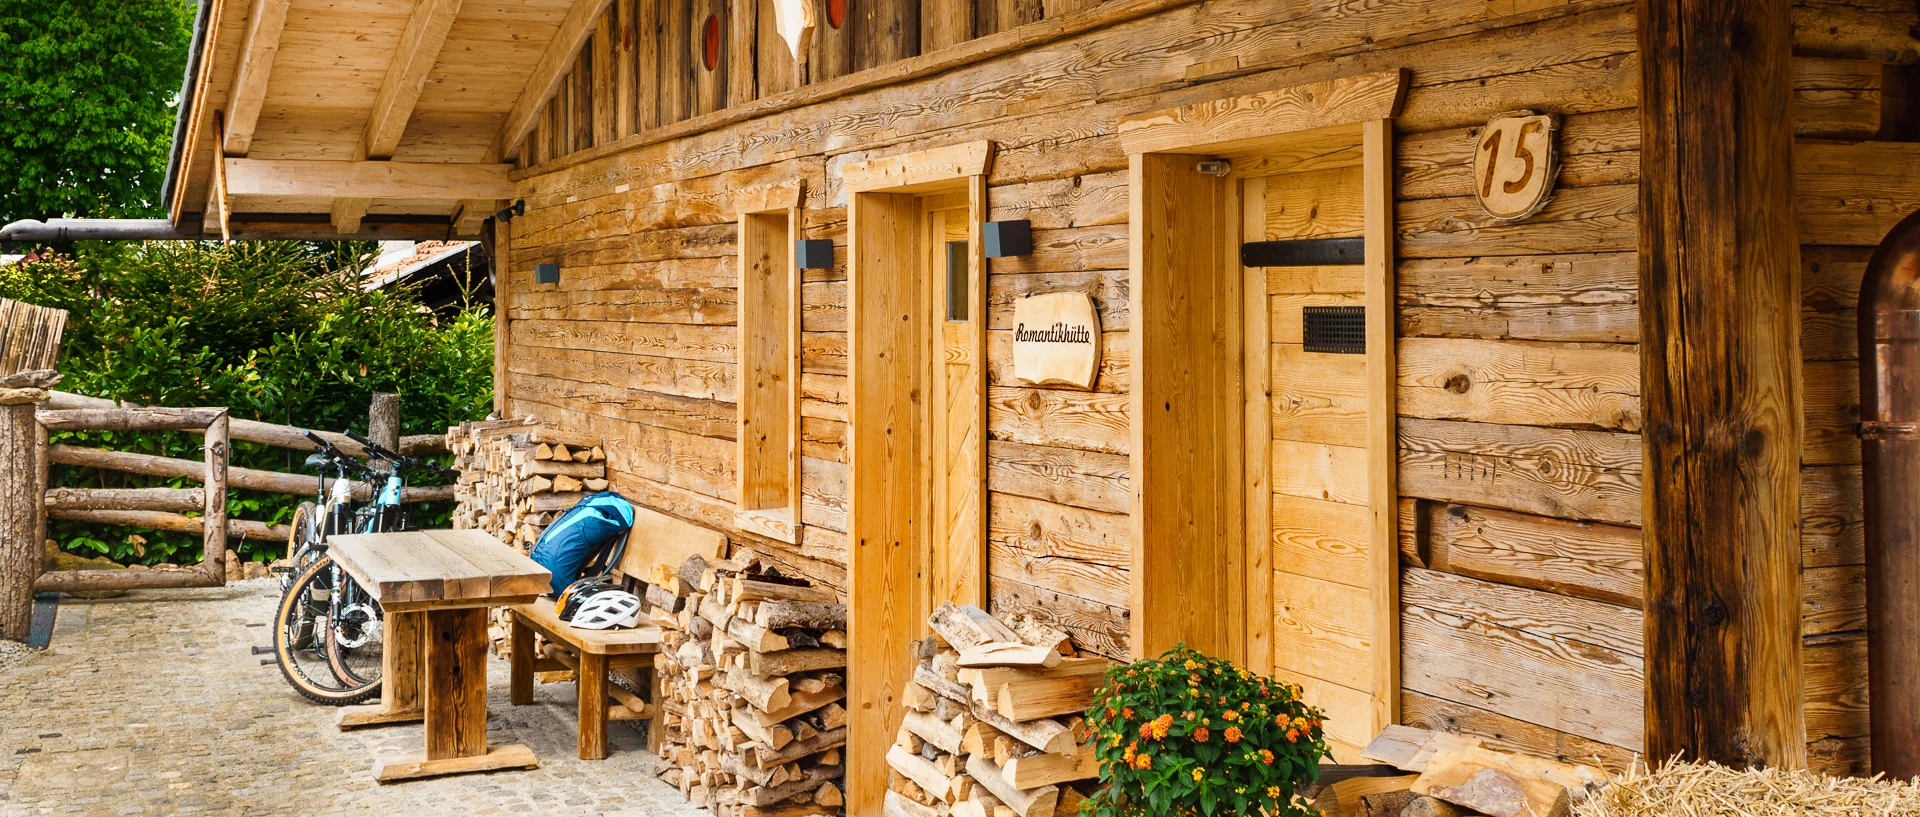 Luxus Hütte Bayerischer Wald Luxushütte für 2 Personen in Bayern